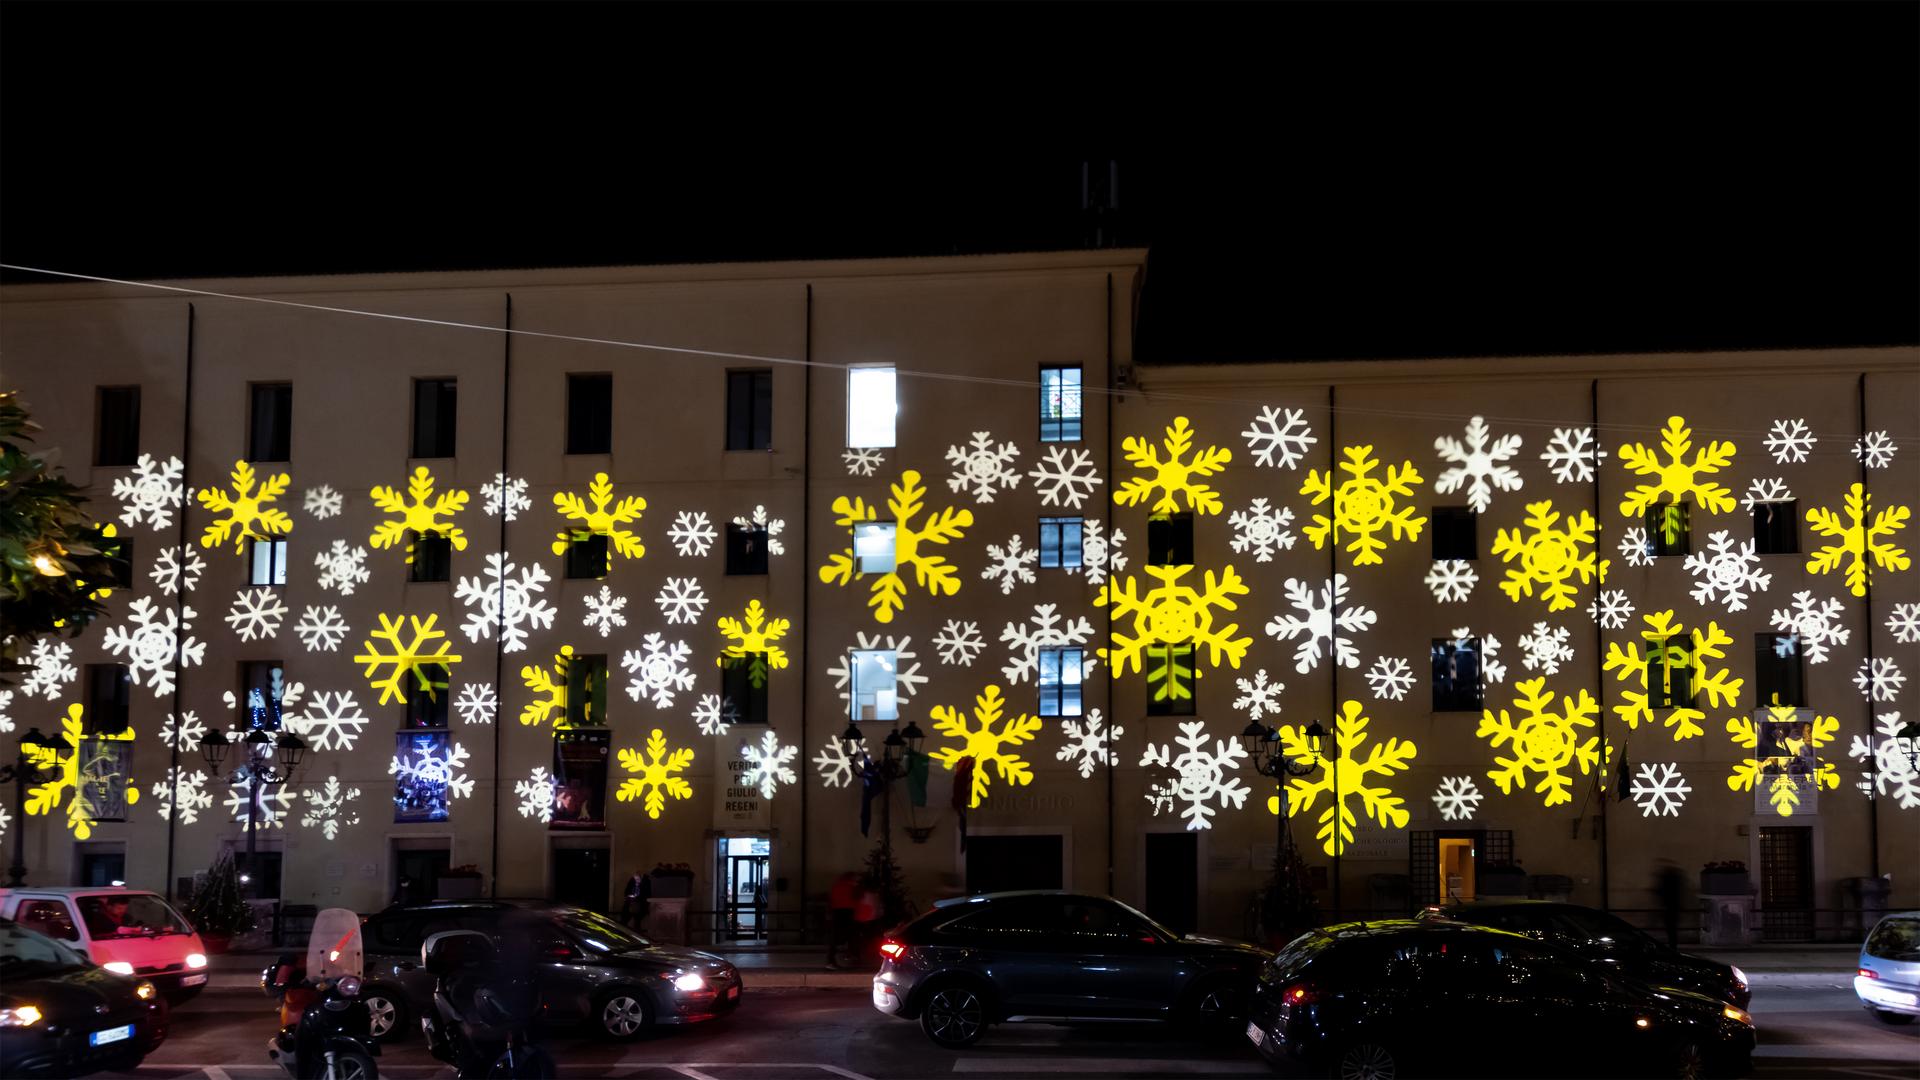 PROLIGHTS Mosaico L illuminates winter holidays sustainably